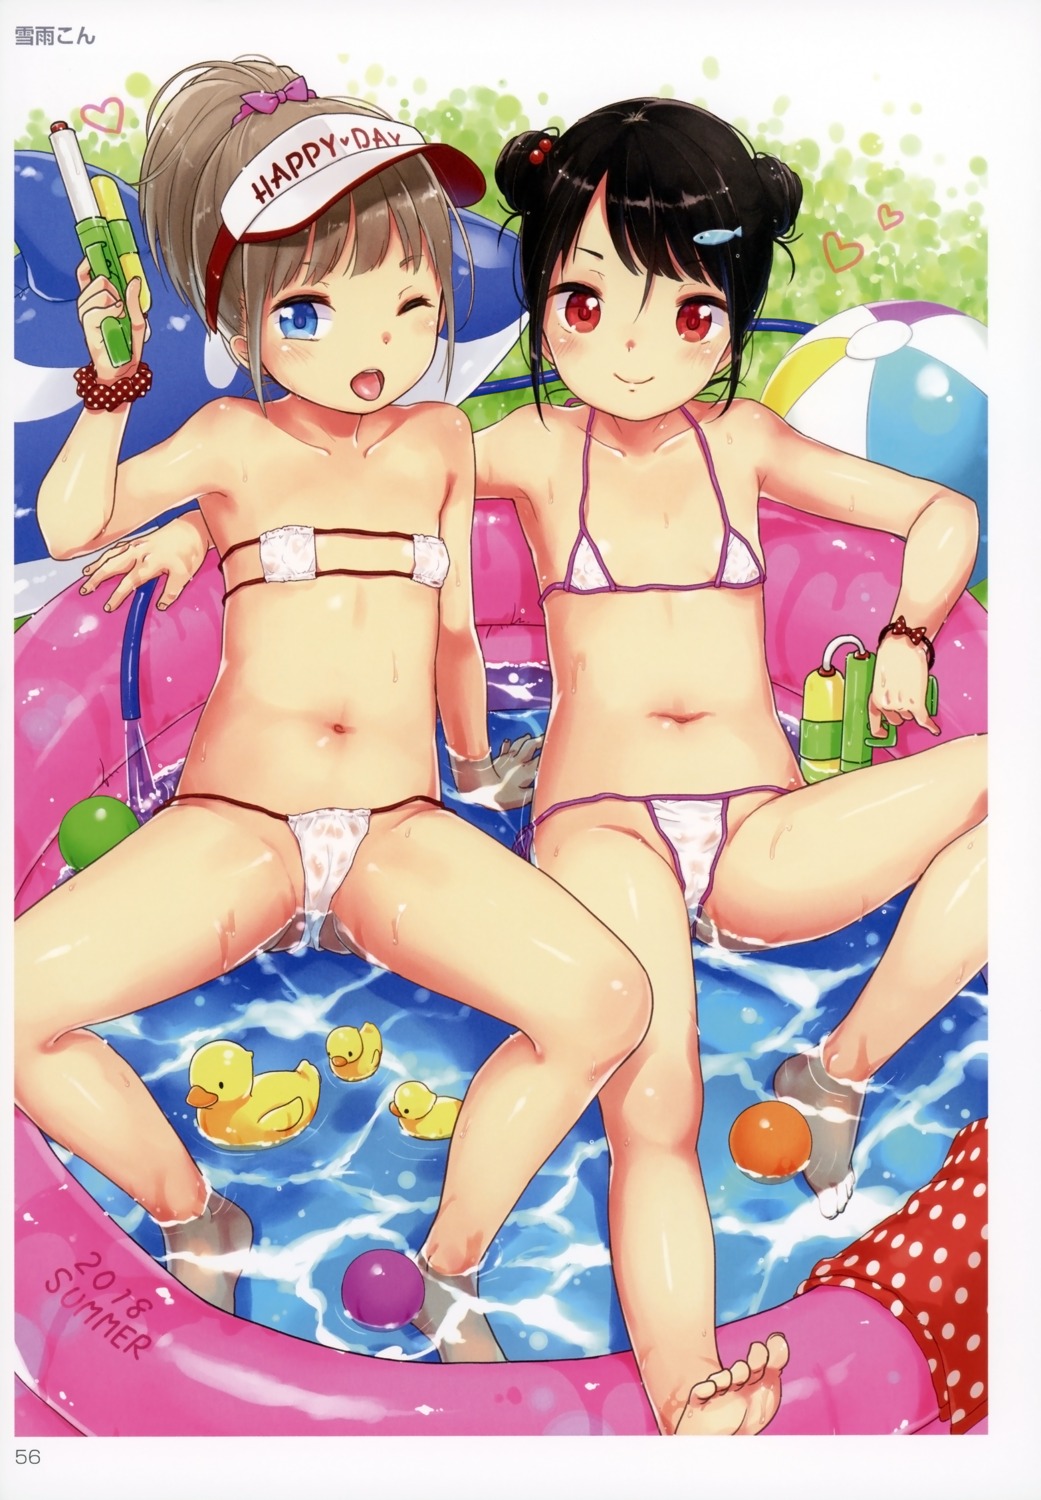 bikini cameltoe gun loli swimsuits wet yukiu_con